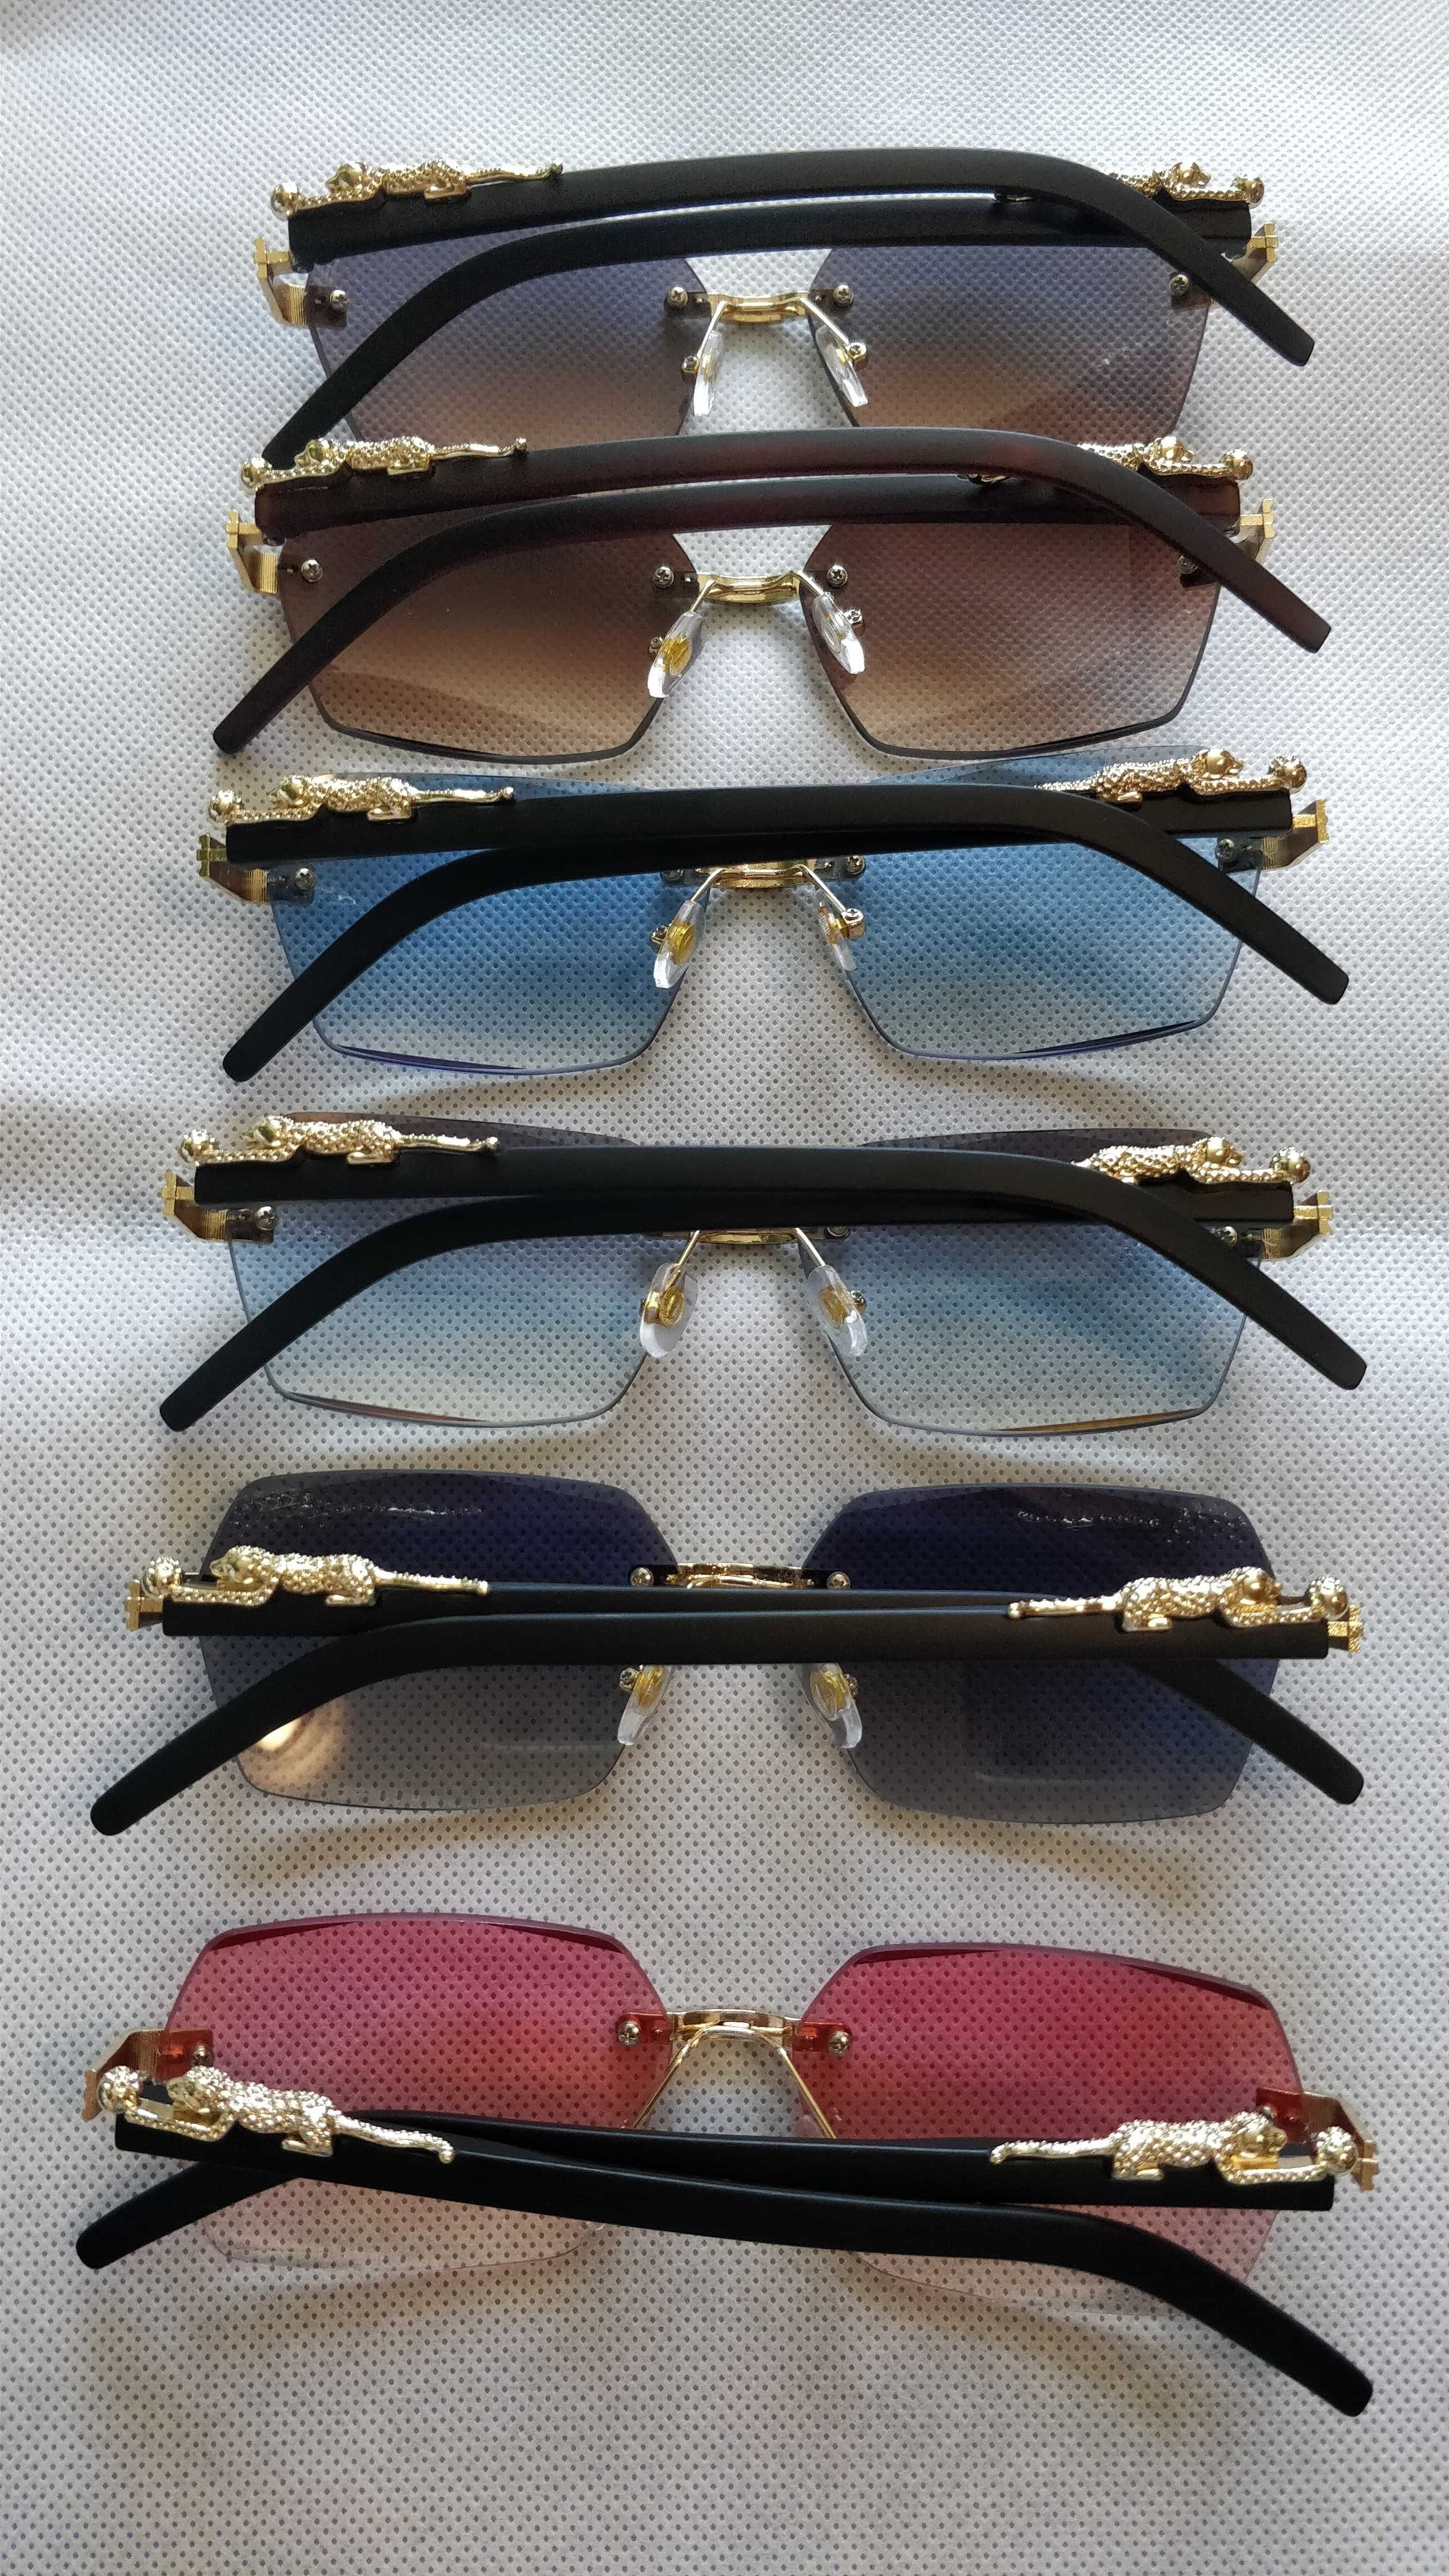 Ochelari de soare Cartier, diverse modele. Saculet si laveta incluse